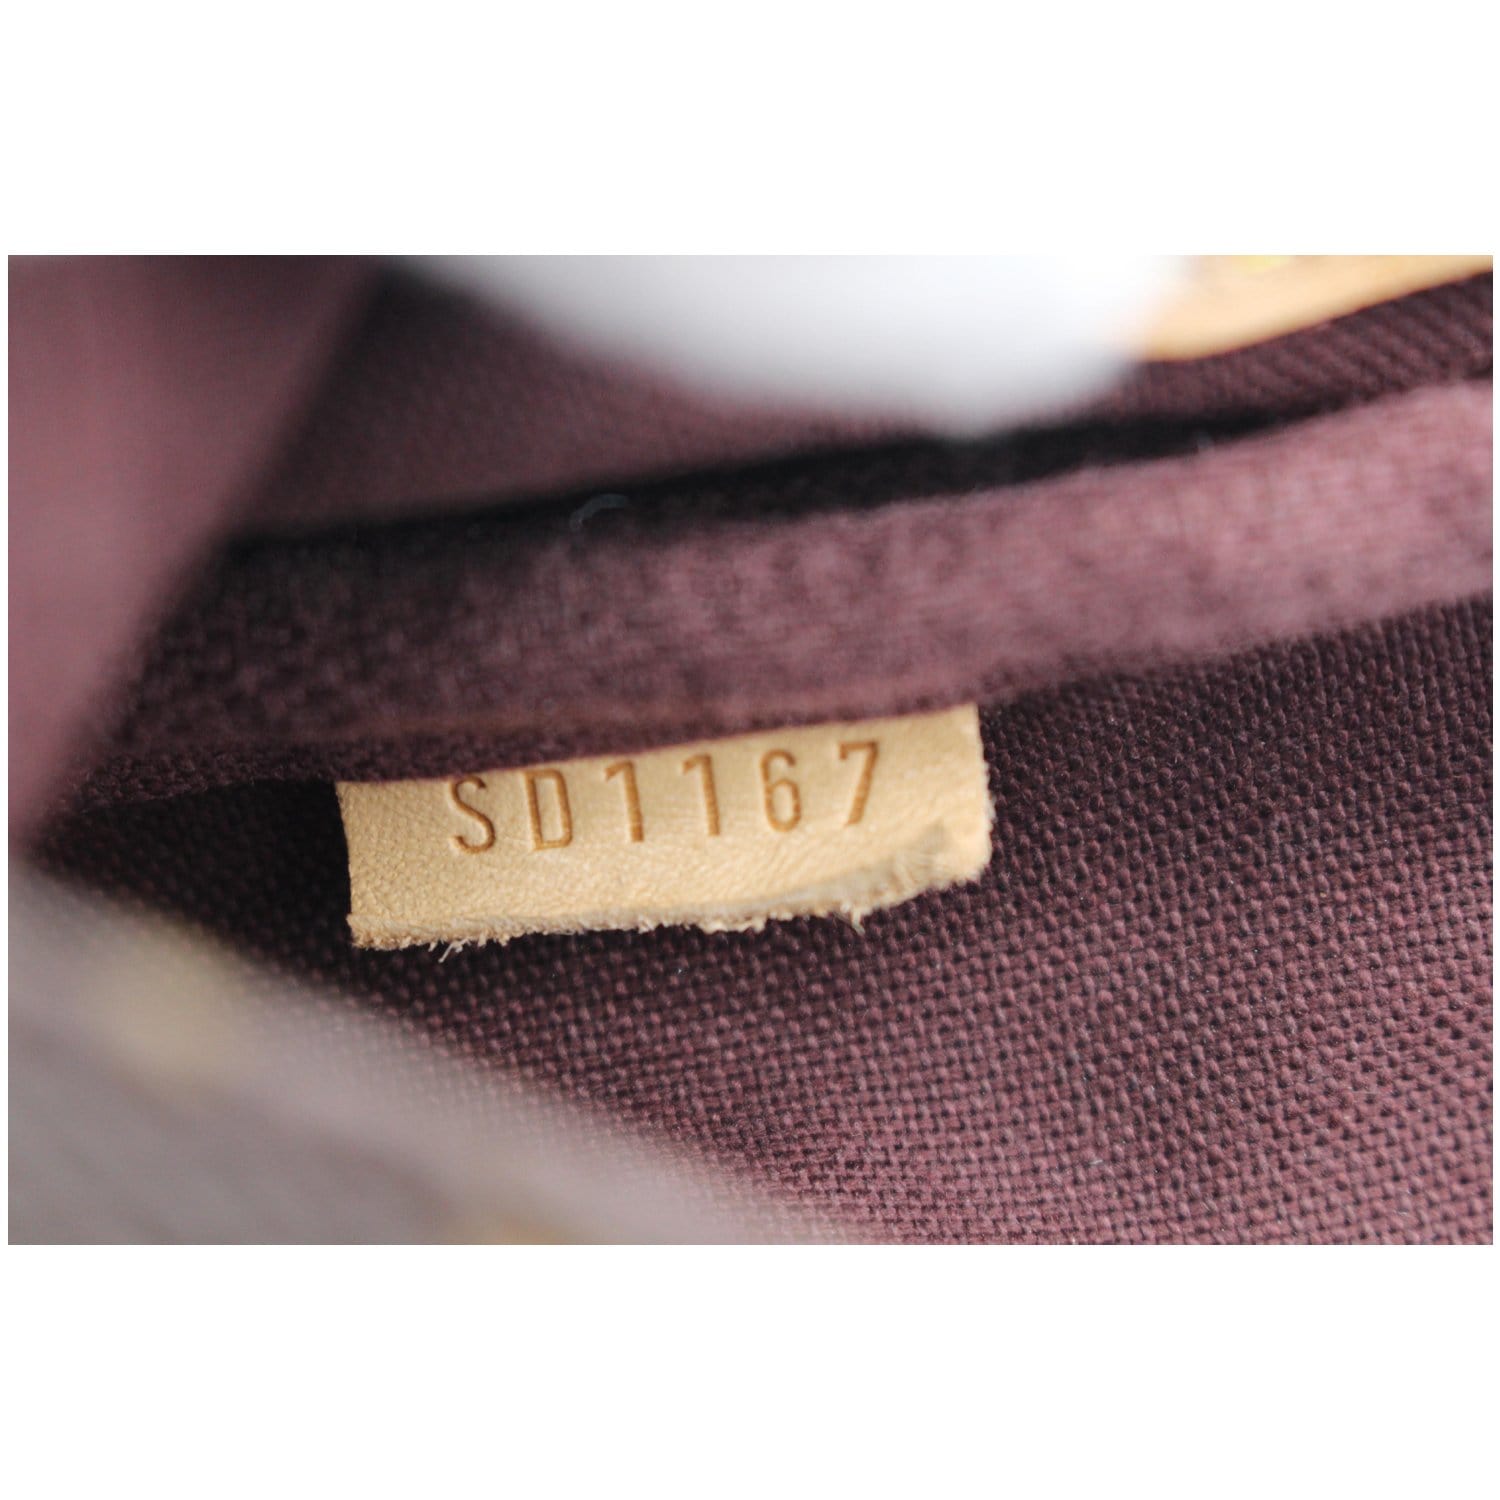 Louis Vuitton, Bags, Louis Vuitton  Crossbody Shoulder 72432l5b